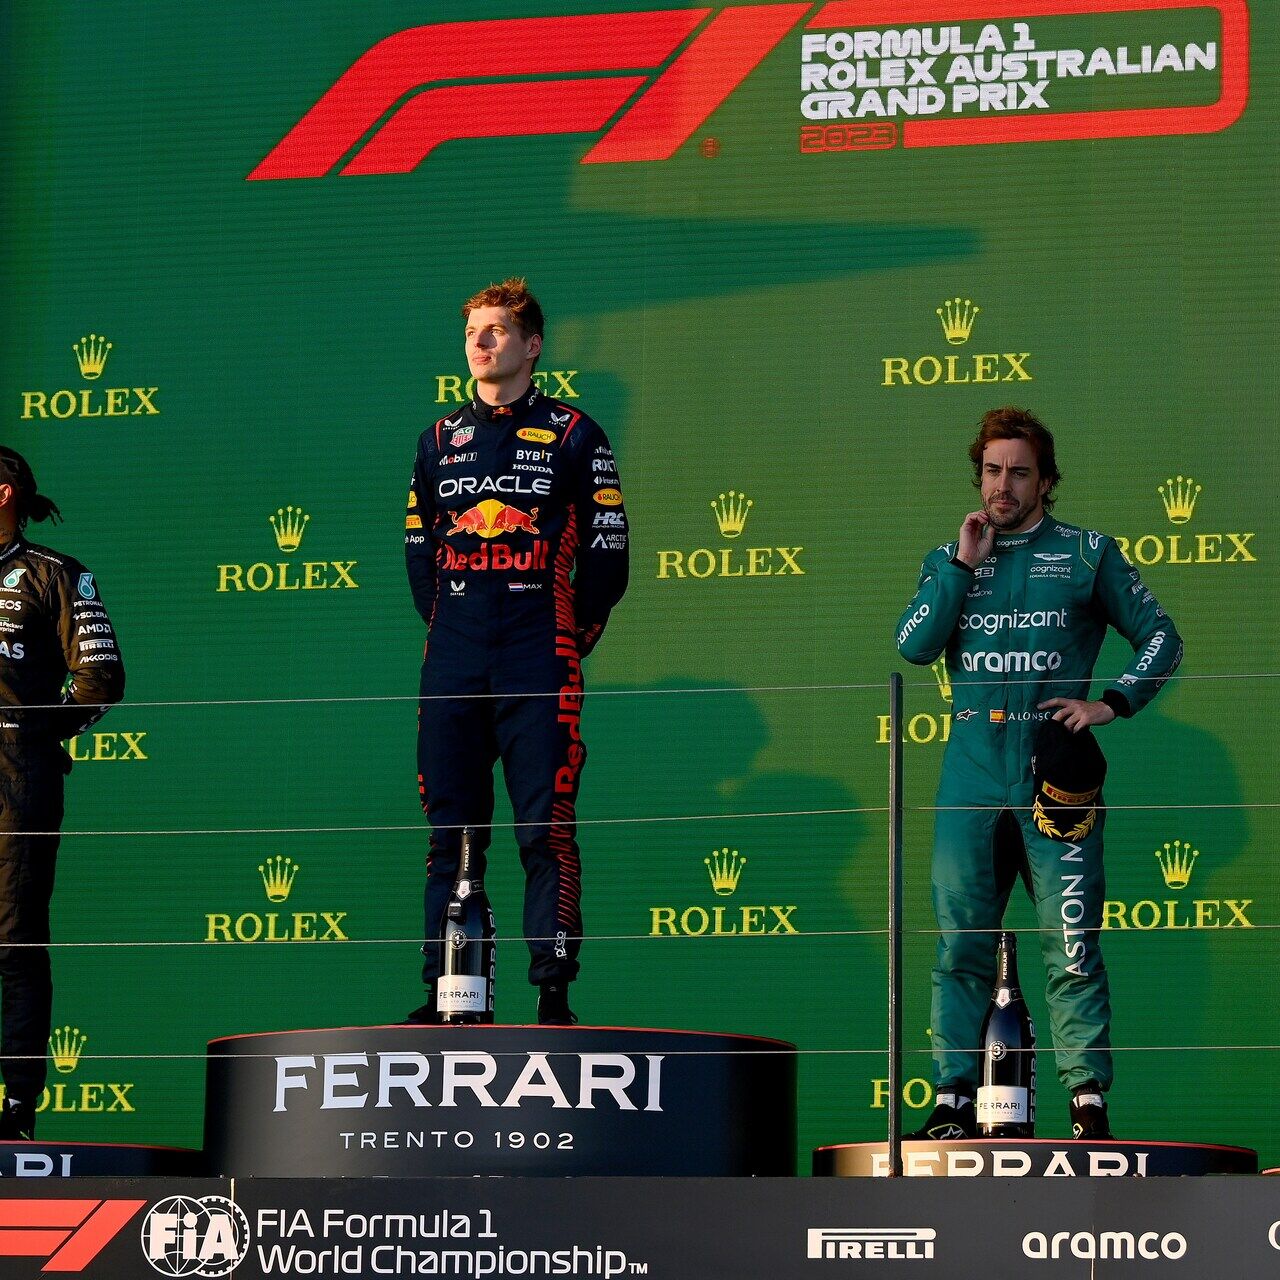 Australian GP: 2023 Australian Grand Prix voitti 11 maailmanmestaruutta Formula 1:n historiassa ryhmiteltynä viimeiselle palkintokorokkeelle Max Verstappenin ollessa ensin Lewis Hamiltonin ja Fernando Alonson edessä